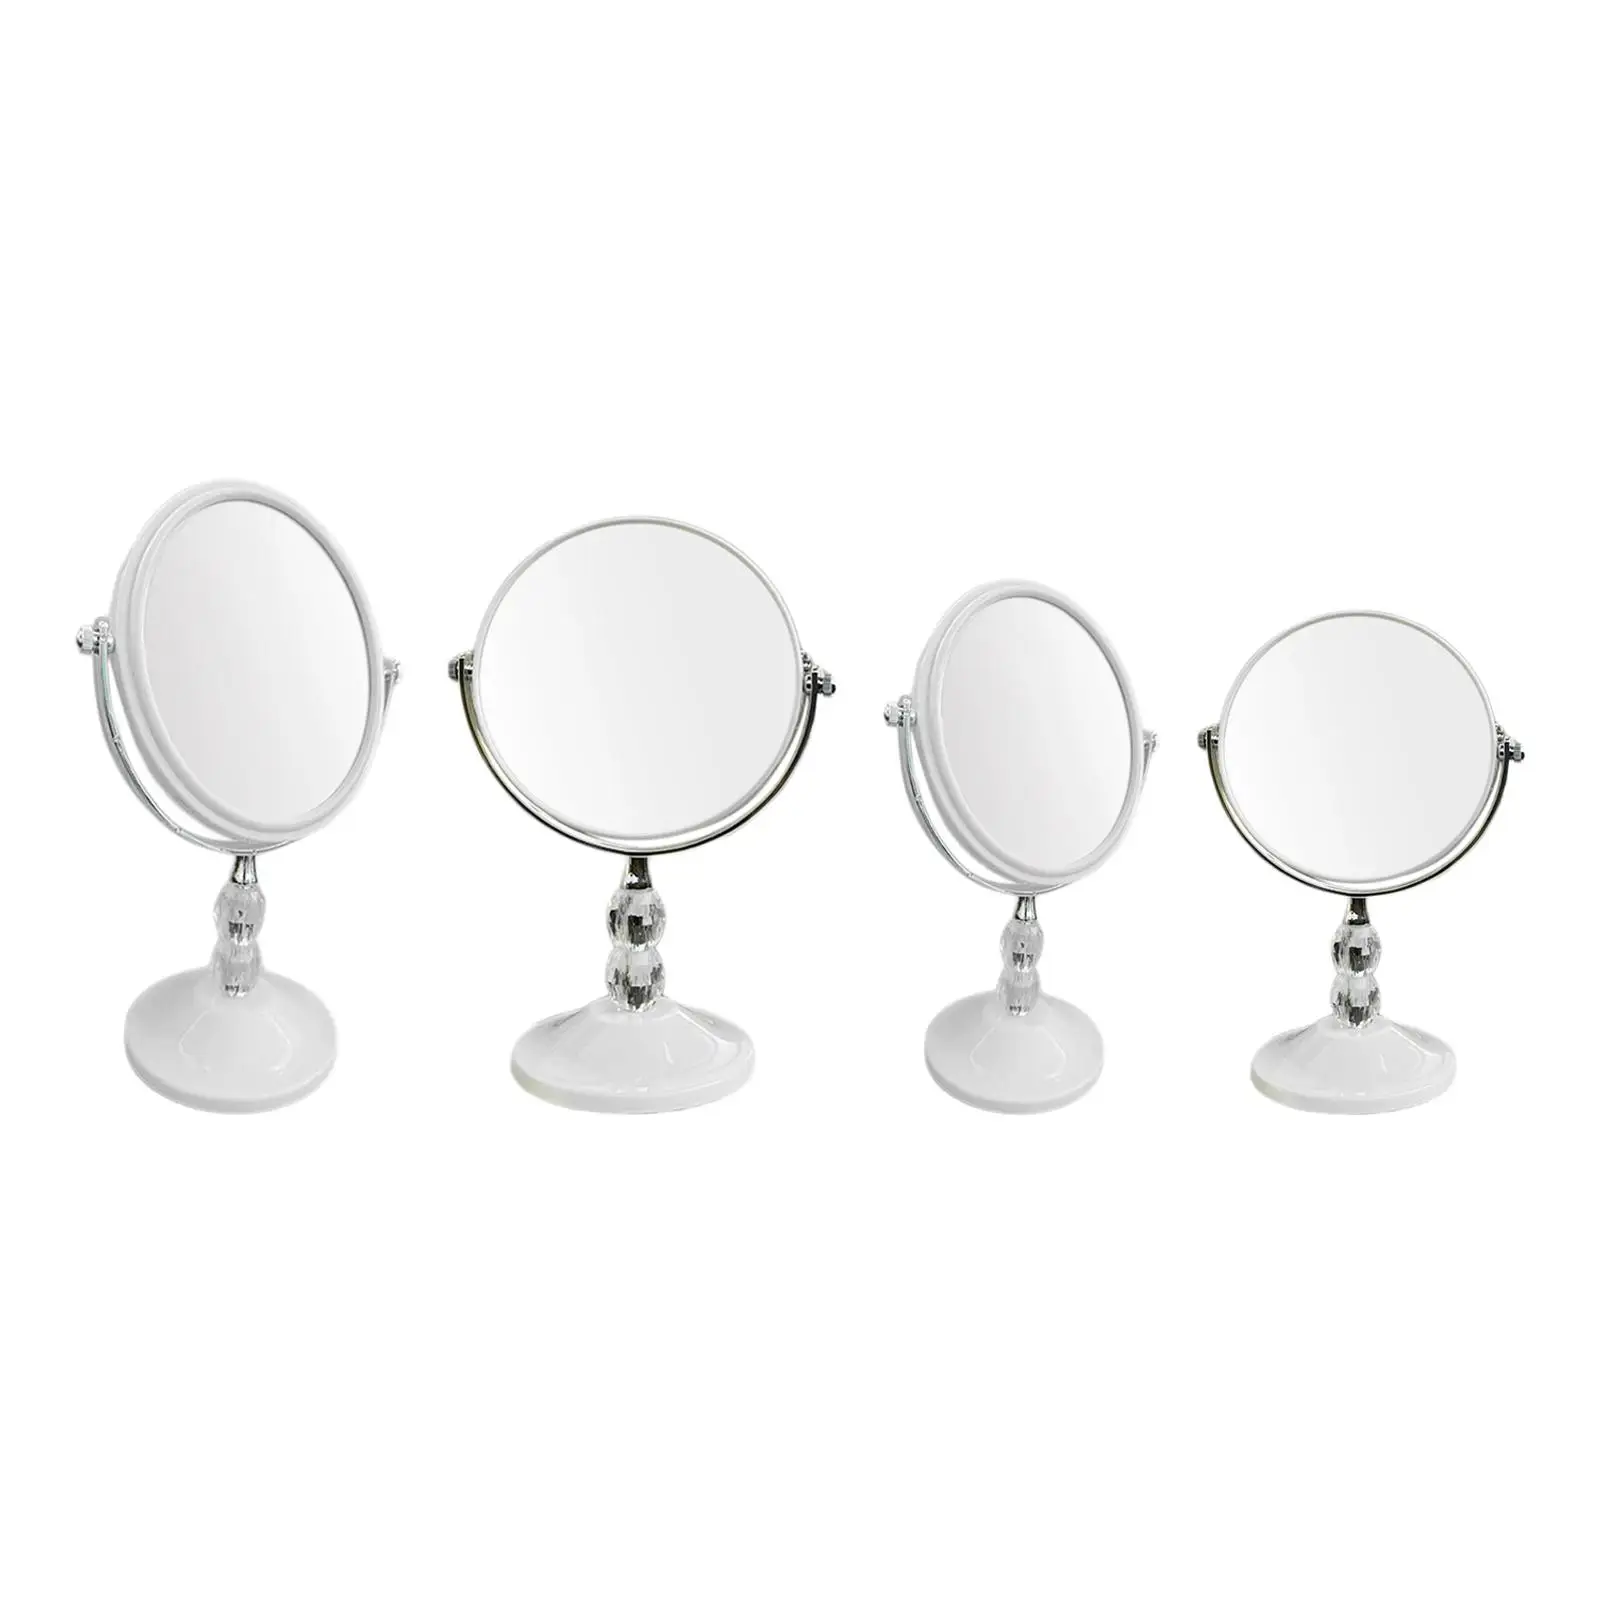 Туалетное зеркало Туалетное зеркало для ванной комнаты с орнаментом на подставке Настольное зеркало Персональное зеркало для прихожих Комоды Прихожая Женщины Мужчины Изображение 5